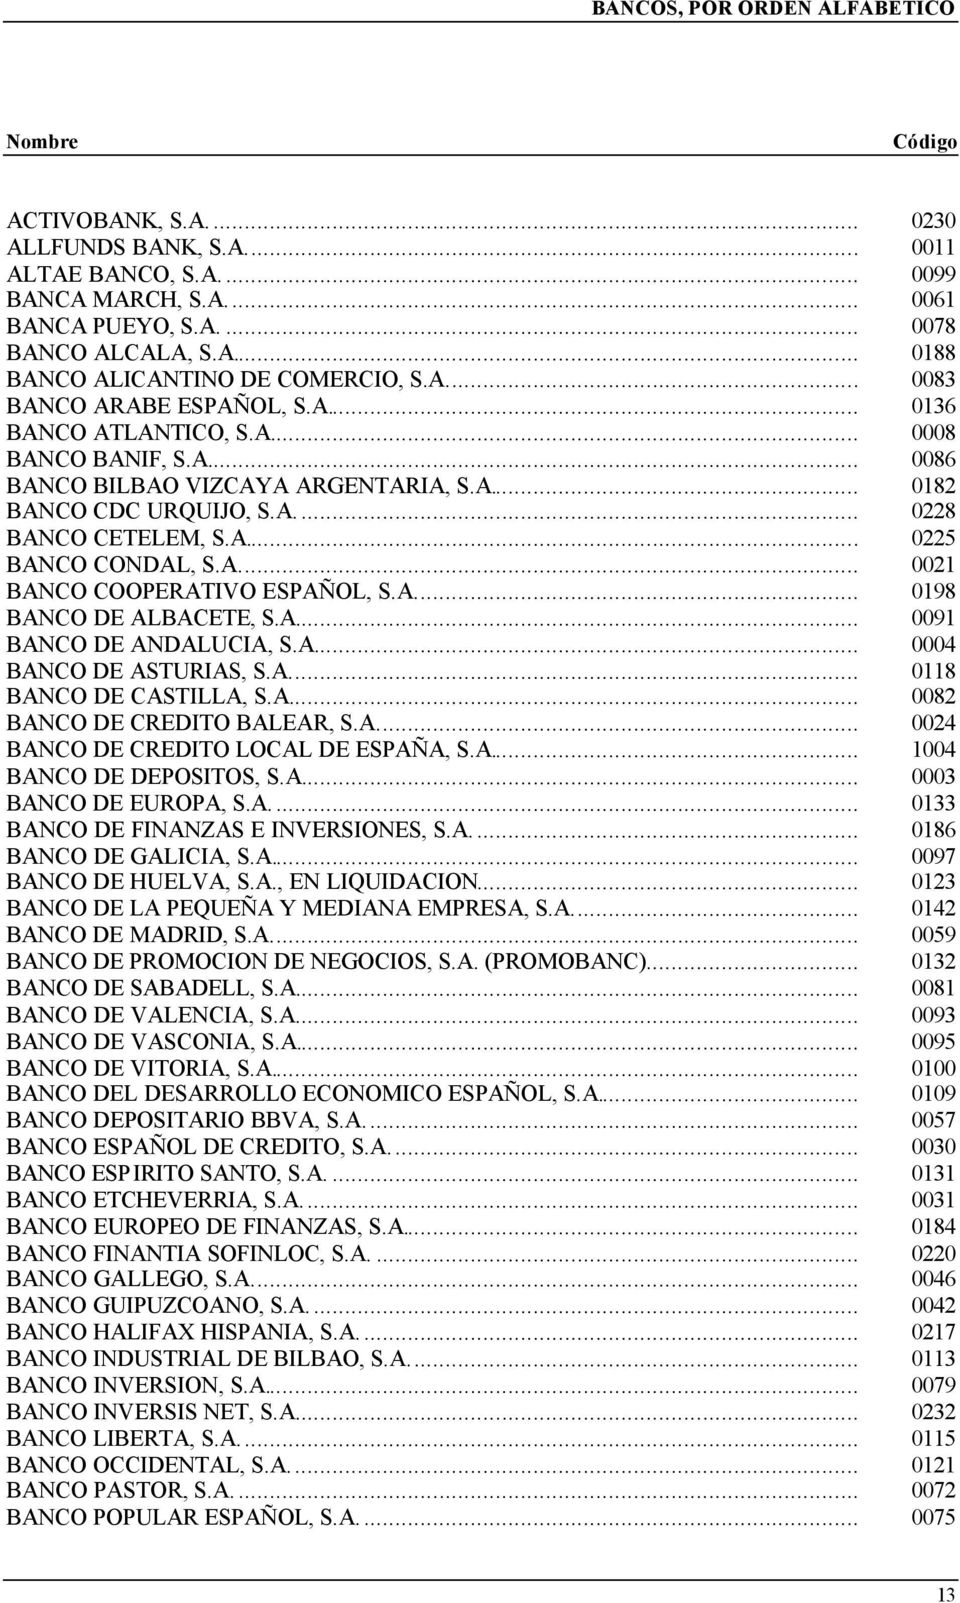 A... 0021 BANCO COOPERATIVO ESPAÑOL, S.A... 0198 BANCO DE ALBACETE, S.A... 0091 BANCO DE ANDALUCIA, S.A... 0004 BANCO DE ASTURIAS, S.A... 0118 BANCO DE CASTILLA, S.A... 0082 BANCO DE CREDITO BALEAR, S.